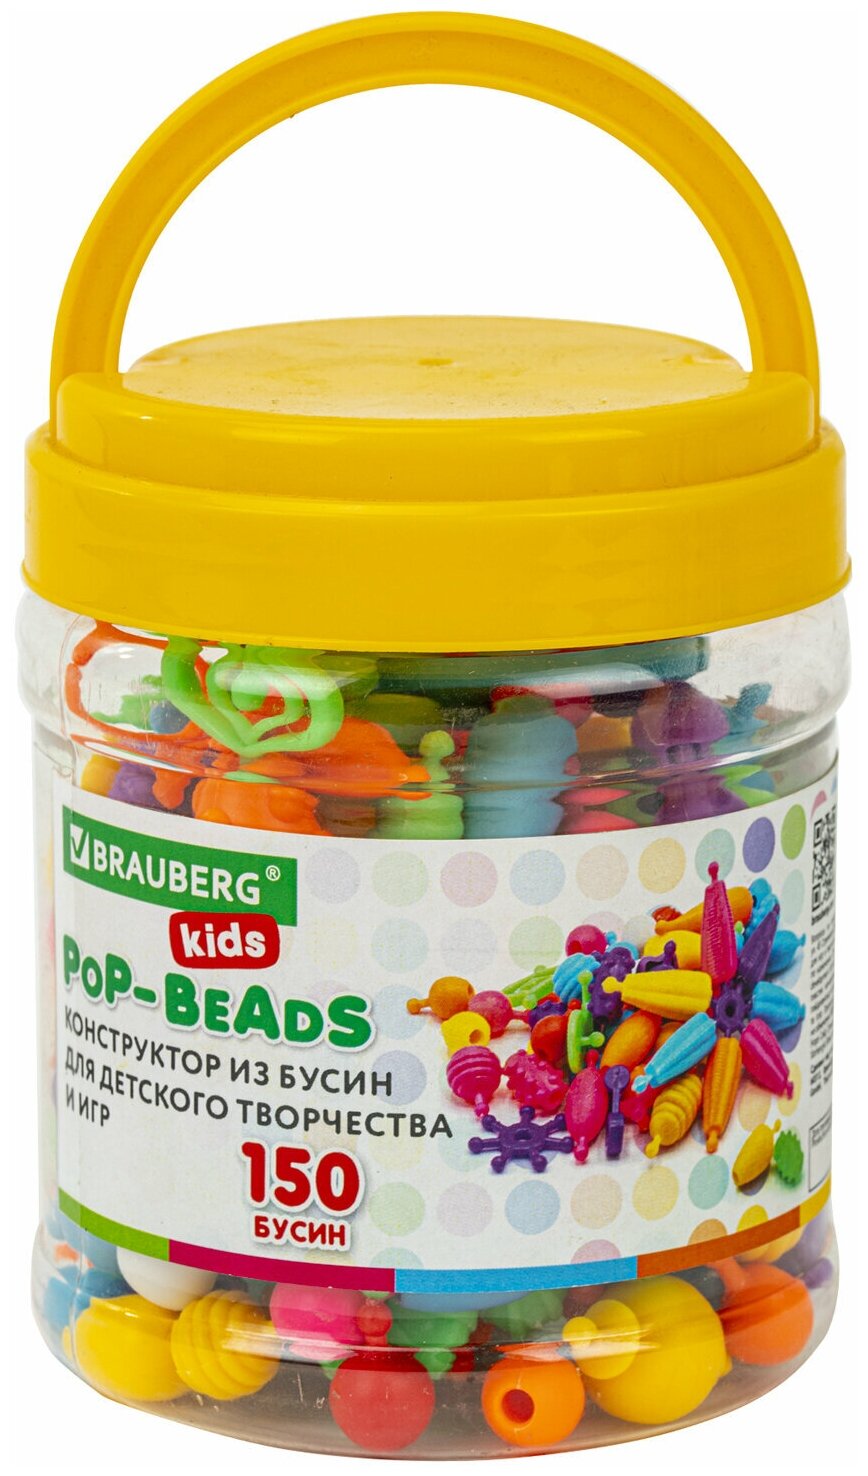 Конструктор для творчества, игр, и создания украшений Brauberg Kids Pop-Beads, 150 бусин, основы для браслетов, колец